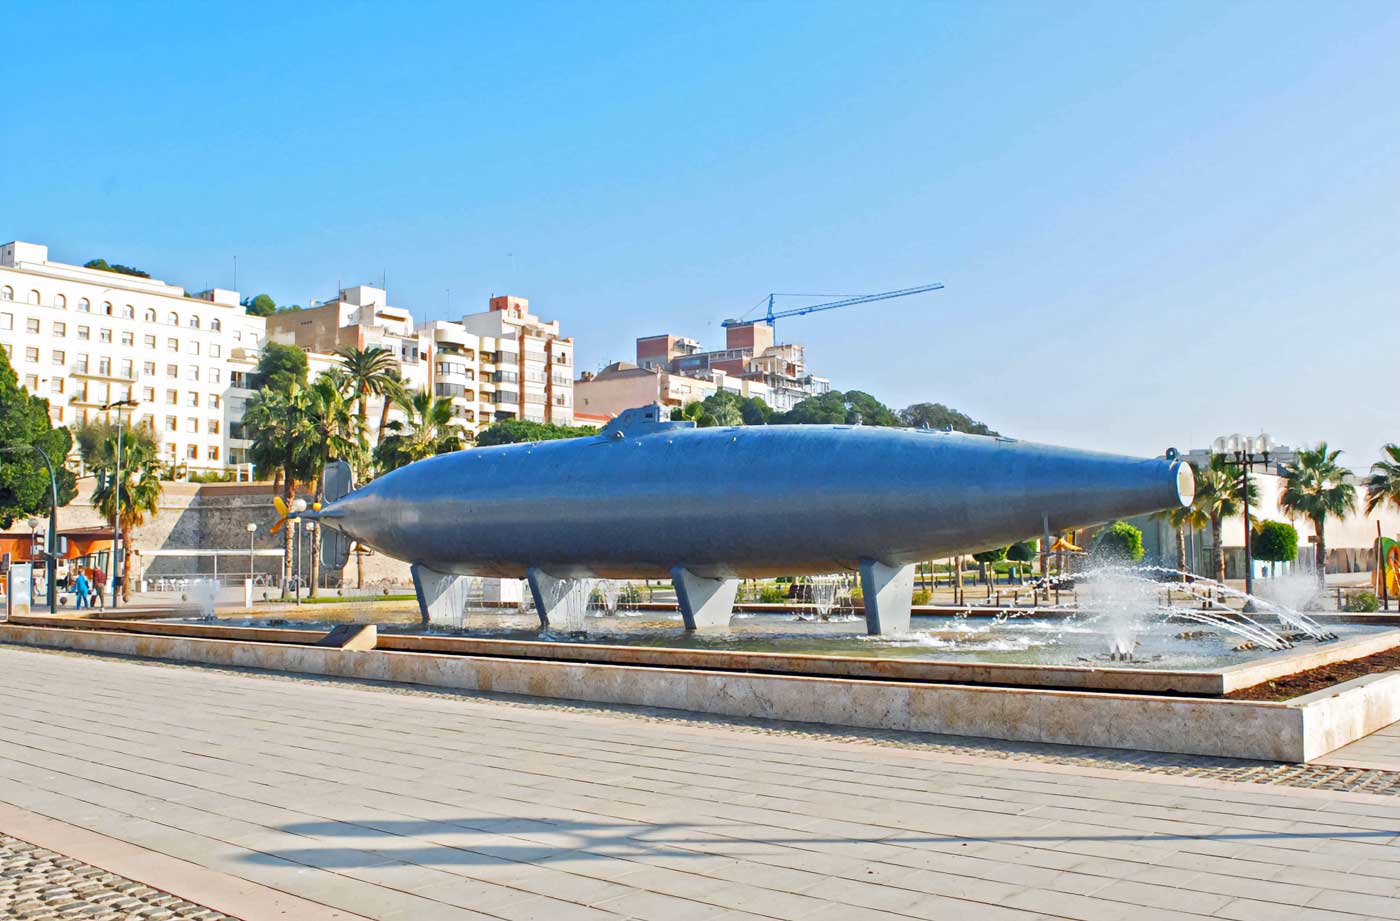 Submarine Peral